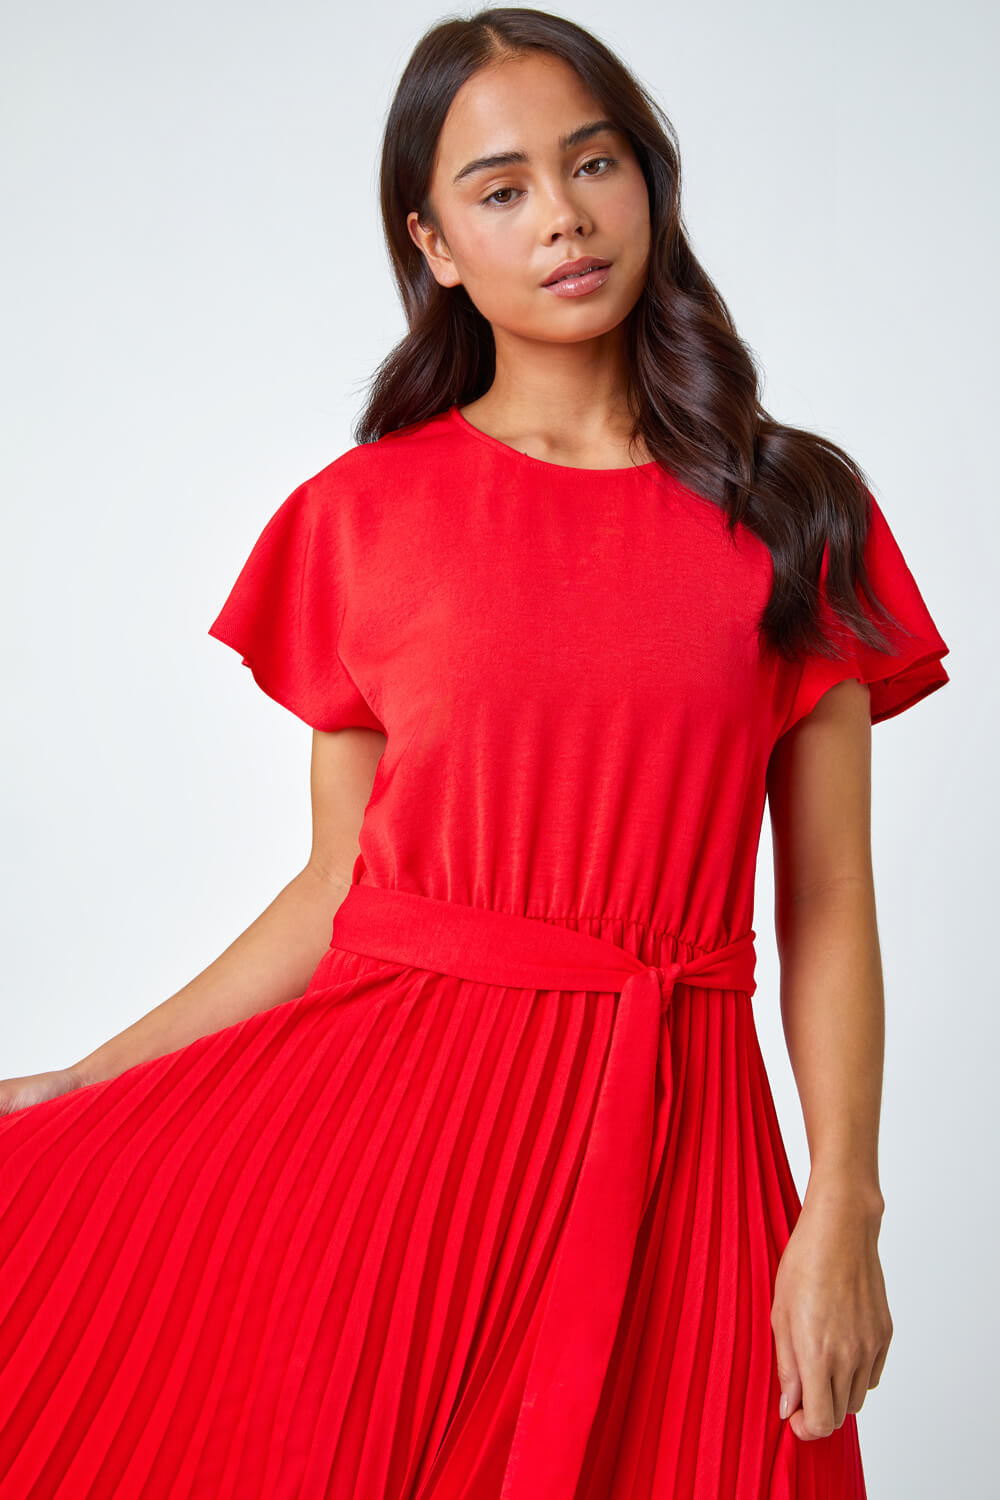 Red Petite Plain Pleated Skirt Midi Dress, Image 4 of 5